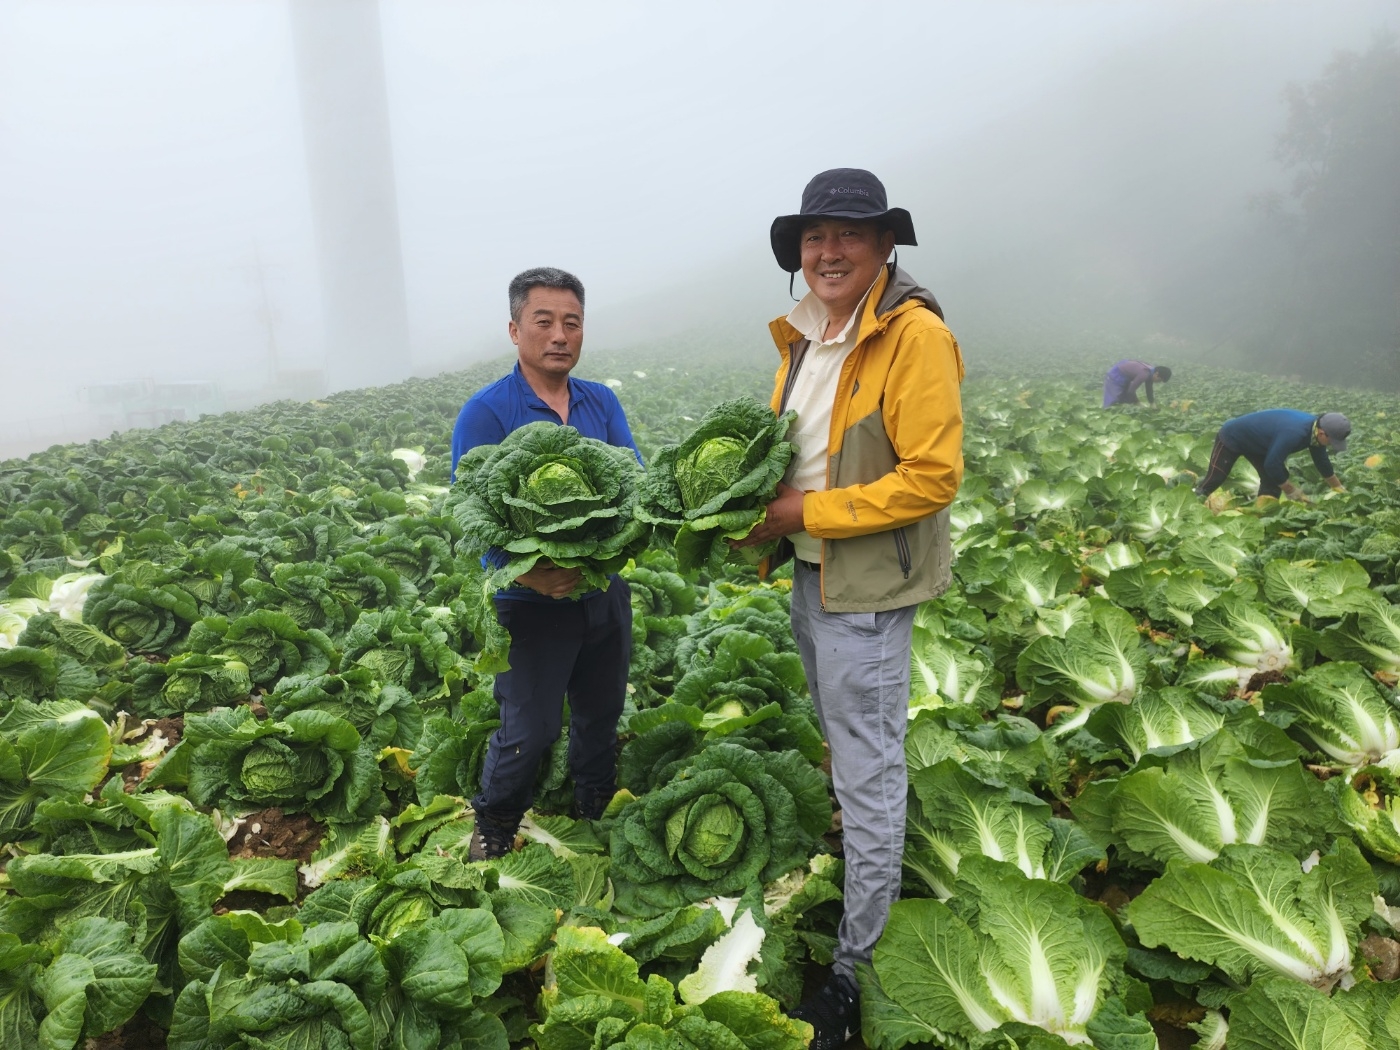 산마을영농조합 김우성 대표(오른쪽)와 농민이 강원도 강릉시 왕산면 안반데기 마을에서 수확한 안반데기 배추를 들고있다. 롯데마트 제공